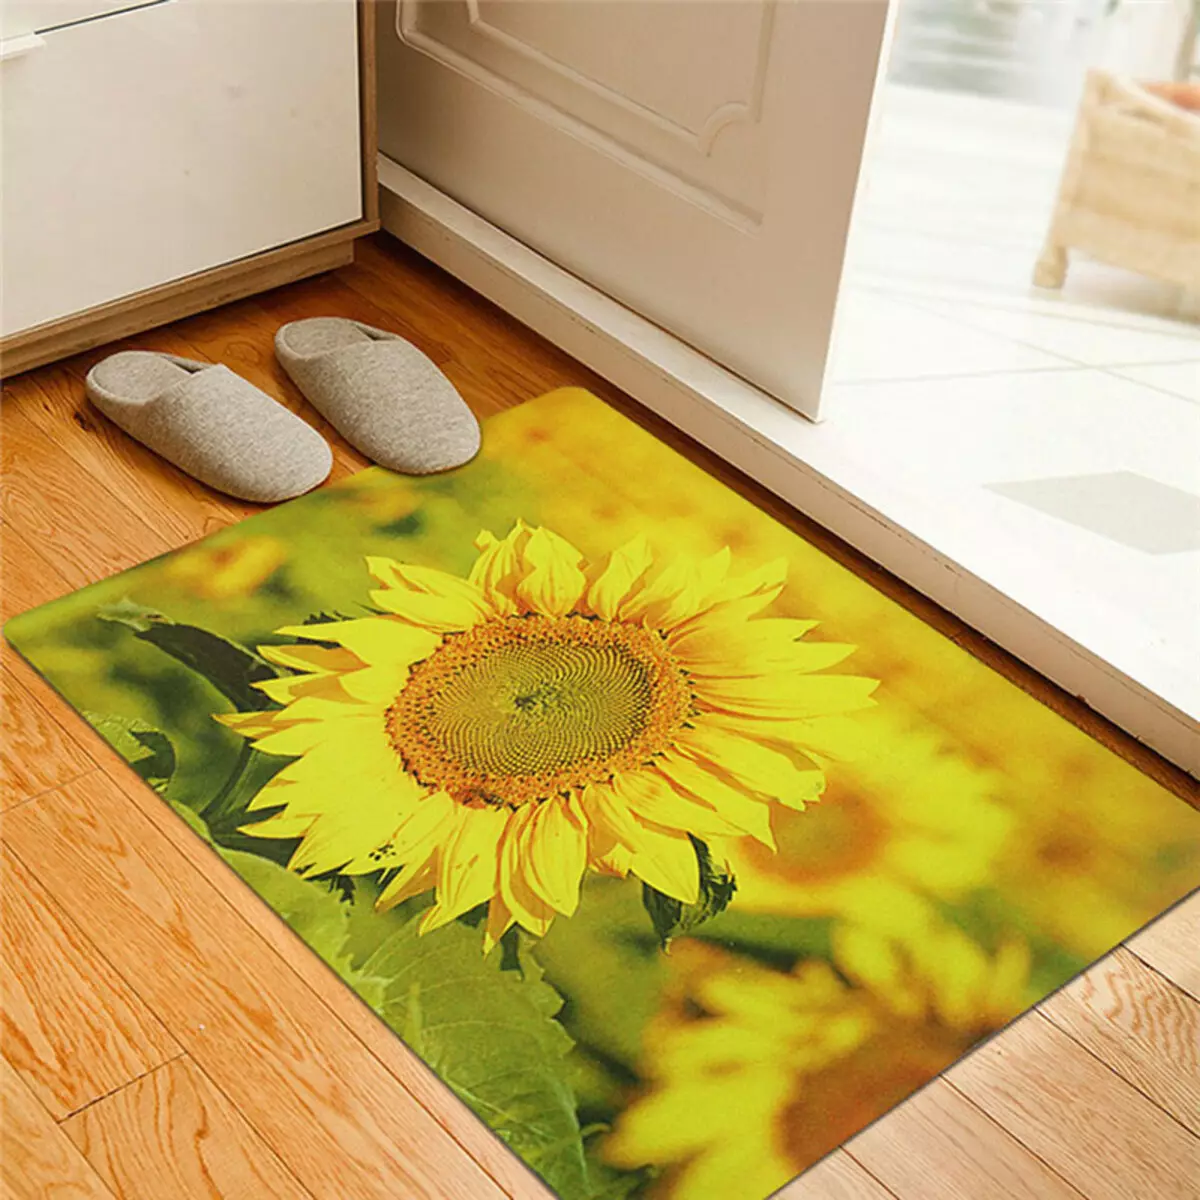 فرش در راهرو (57 عکس): فرش های جوش داده شده و تشک برای کفش در راهرو، مدل بر روی کف از فرش و مواد دیگر 9287_43